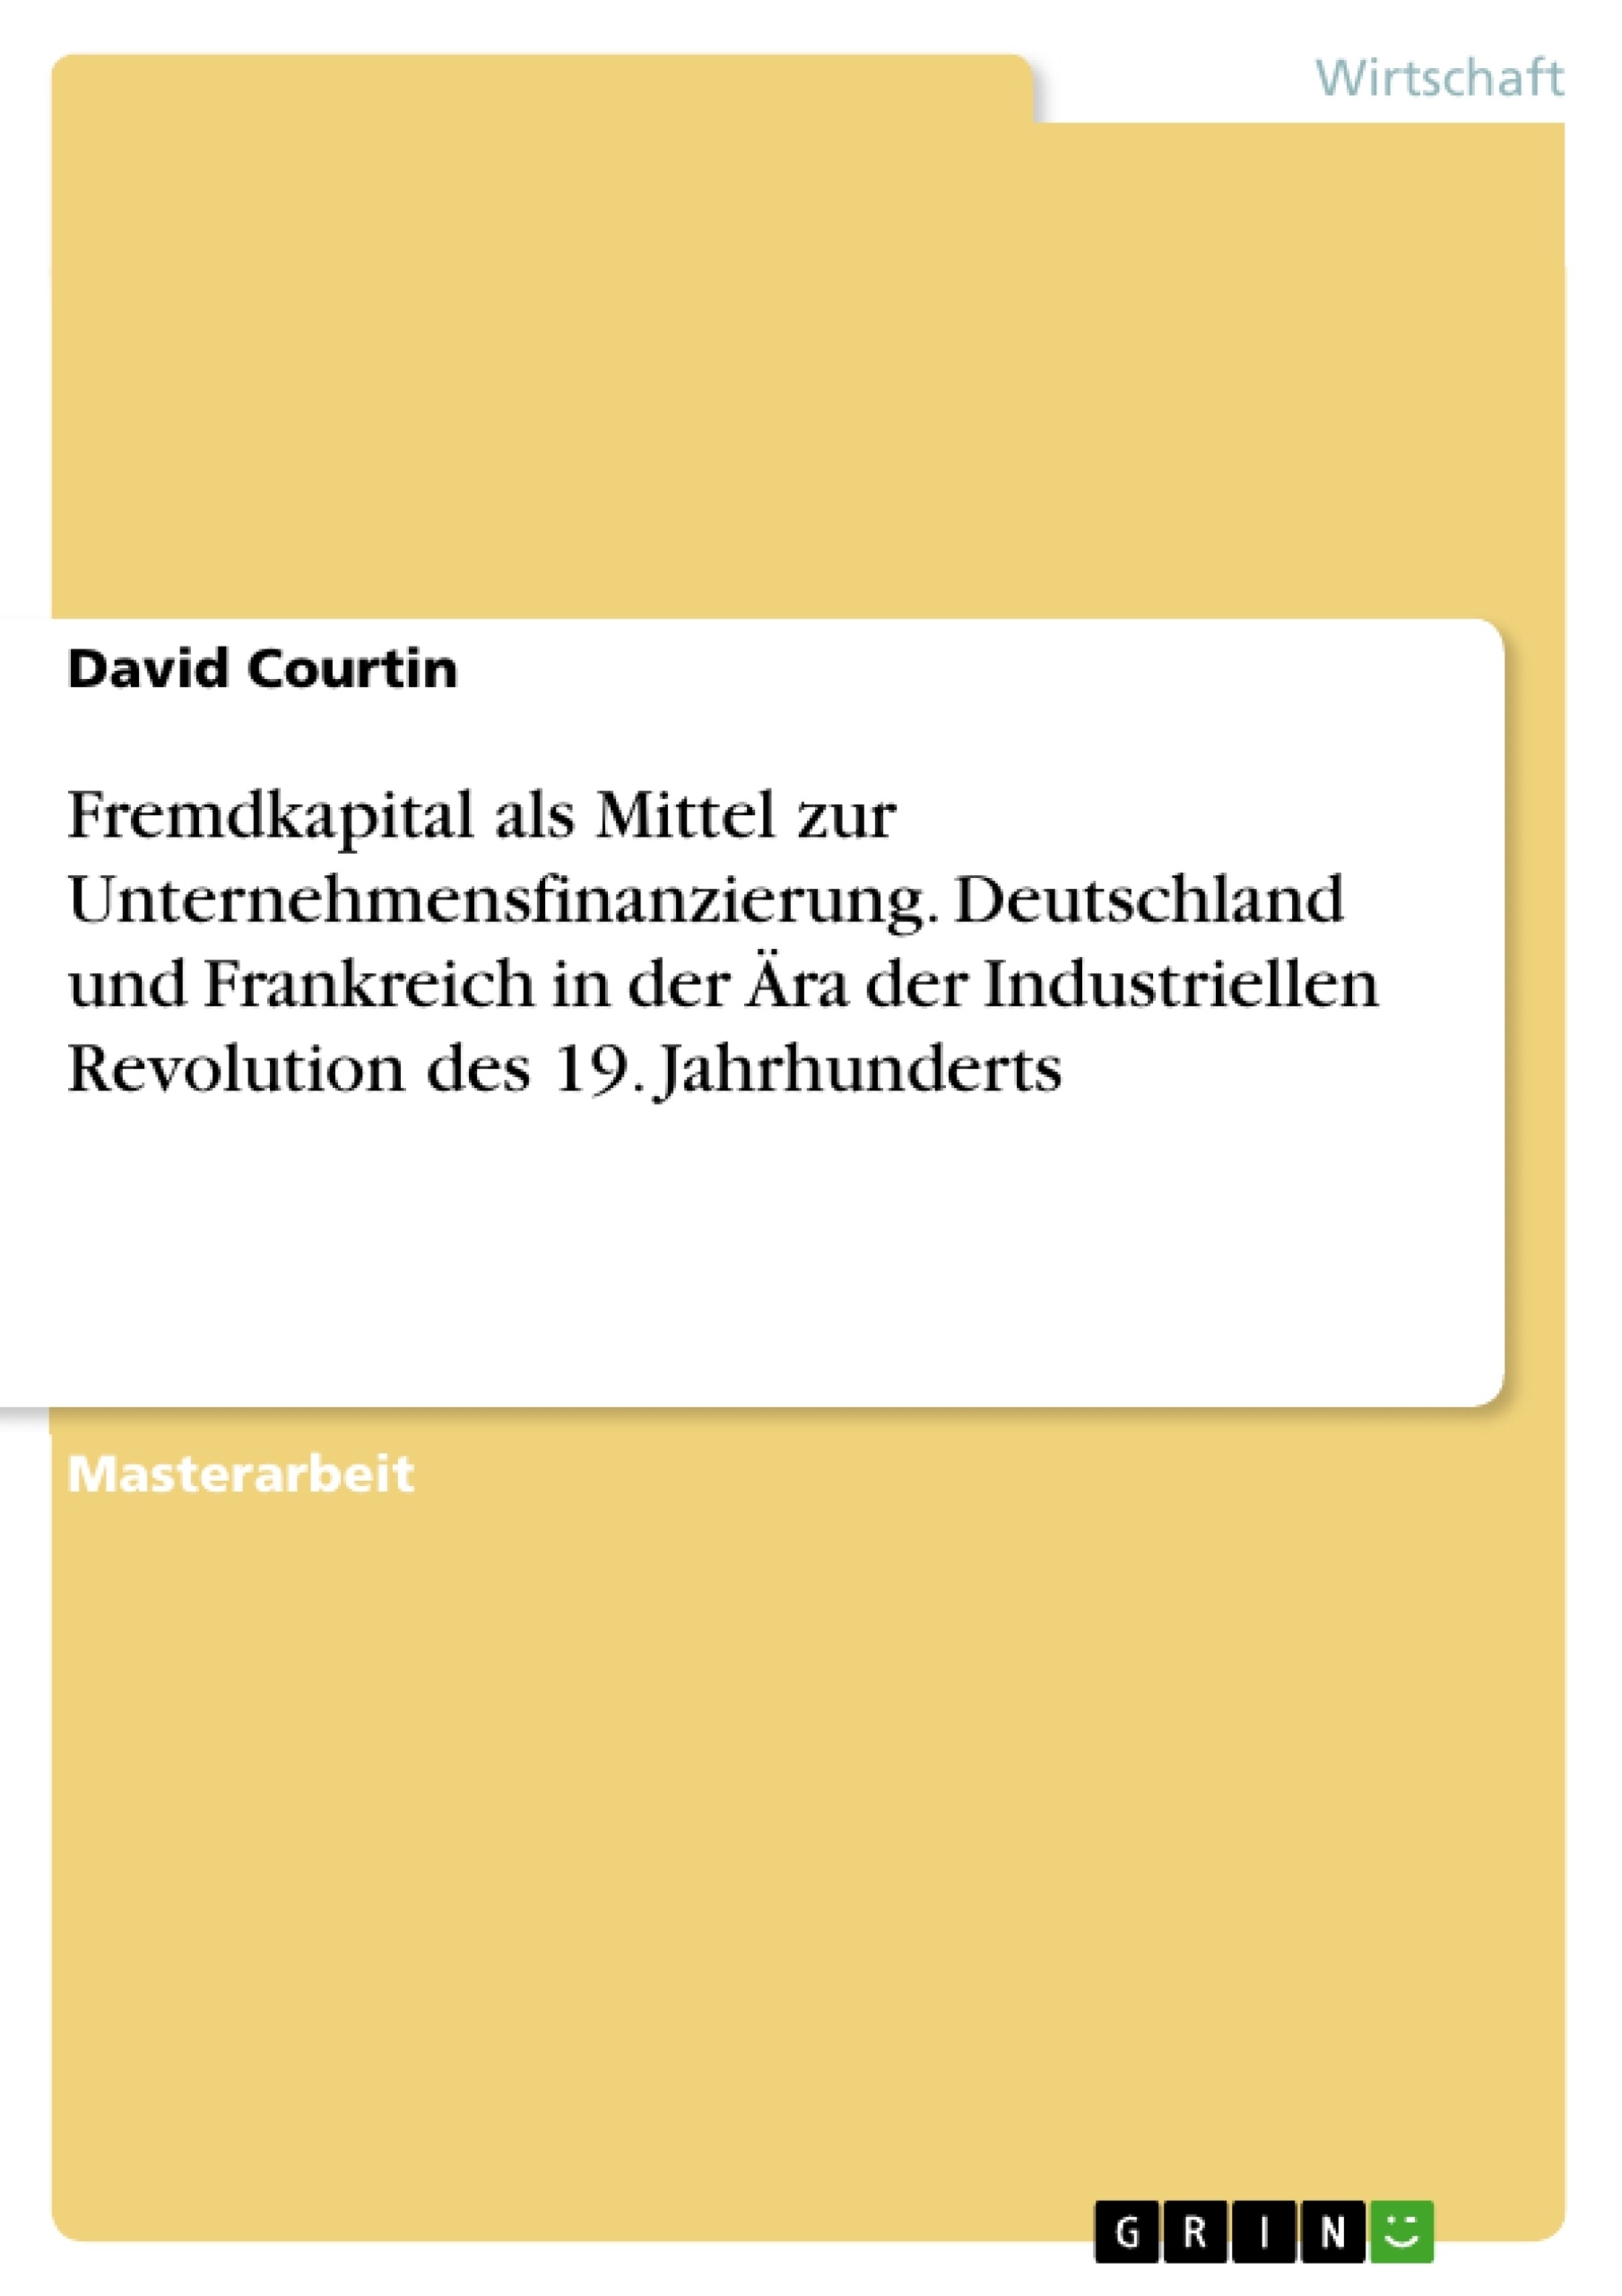 Titel: Fremdkapital als Mittel zur Unternehmensfinanzierung. Deutschland und Frankreich in der Ära der Industriellen Revolution des 19. Jahrhunderts